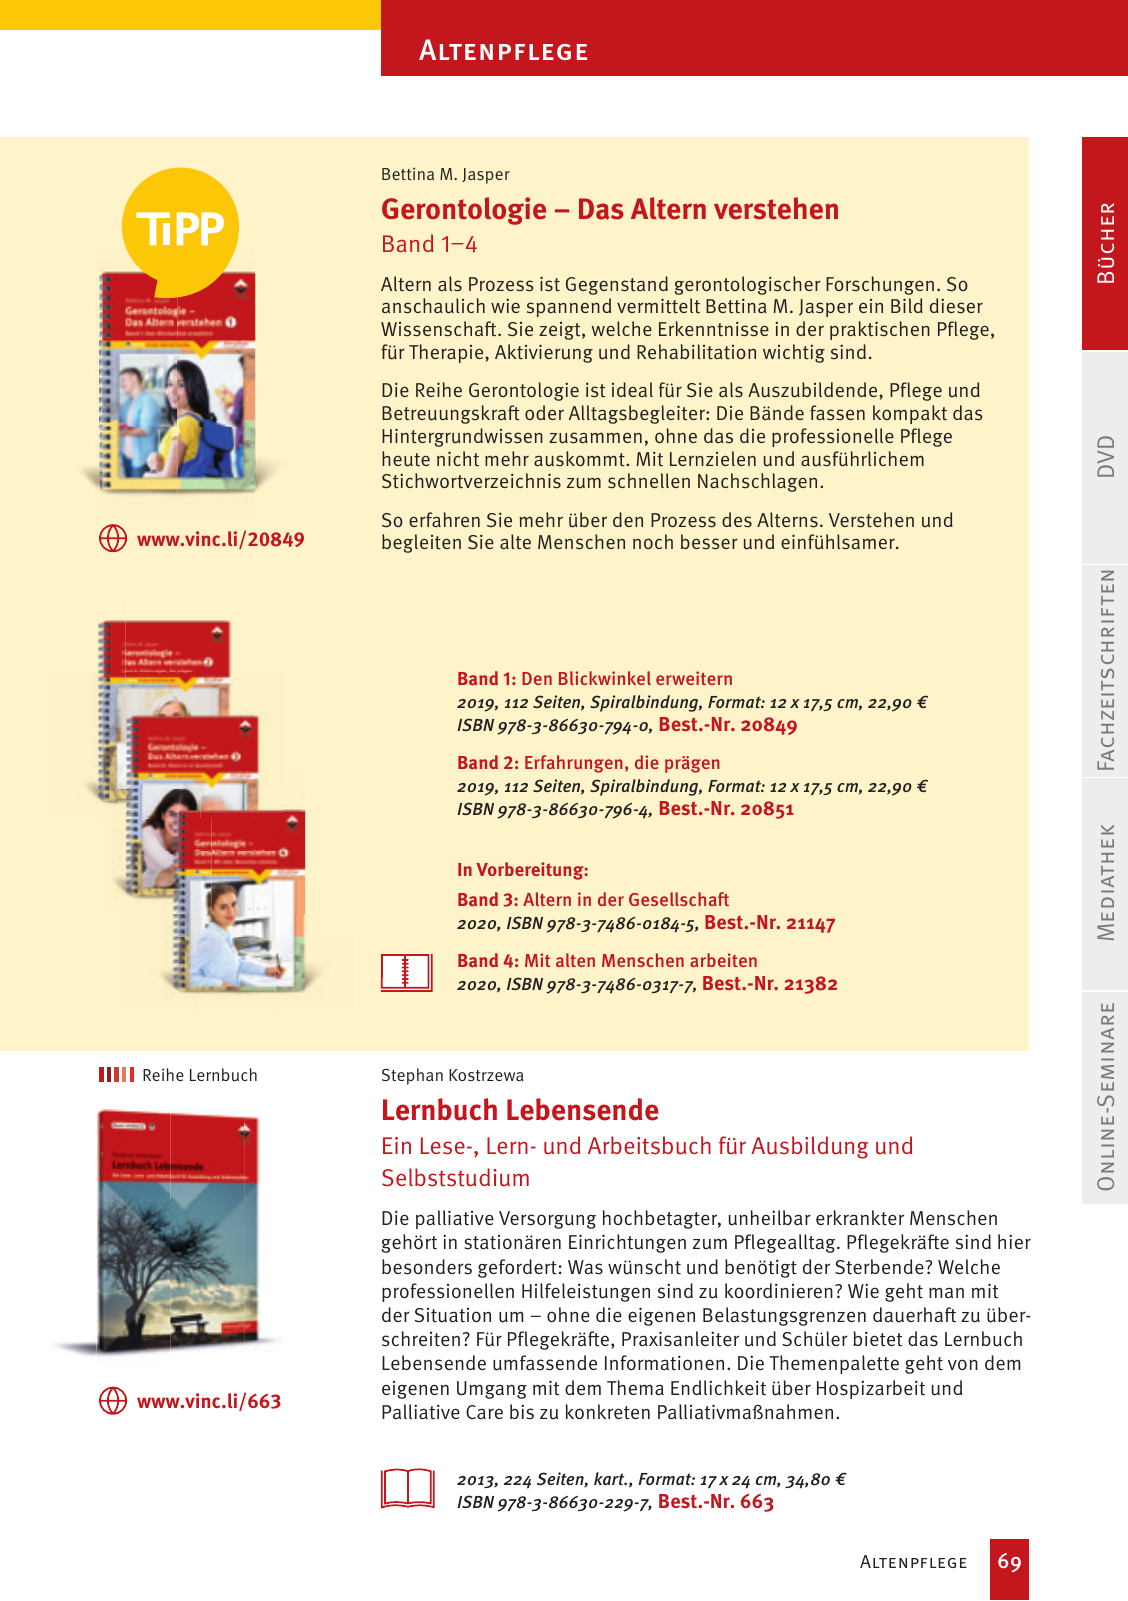 Vorschau Vincentz Verlagsprogramm 2020 Seite 69